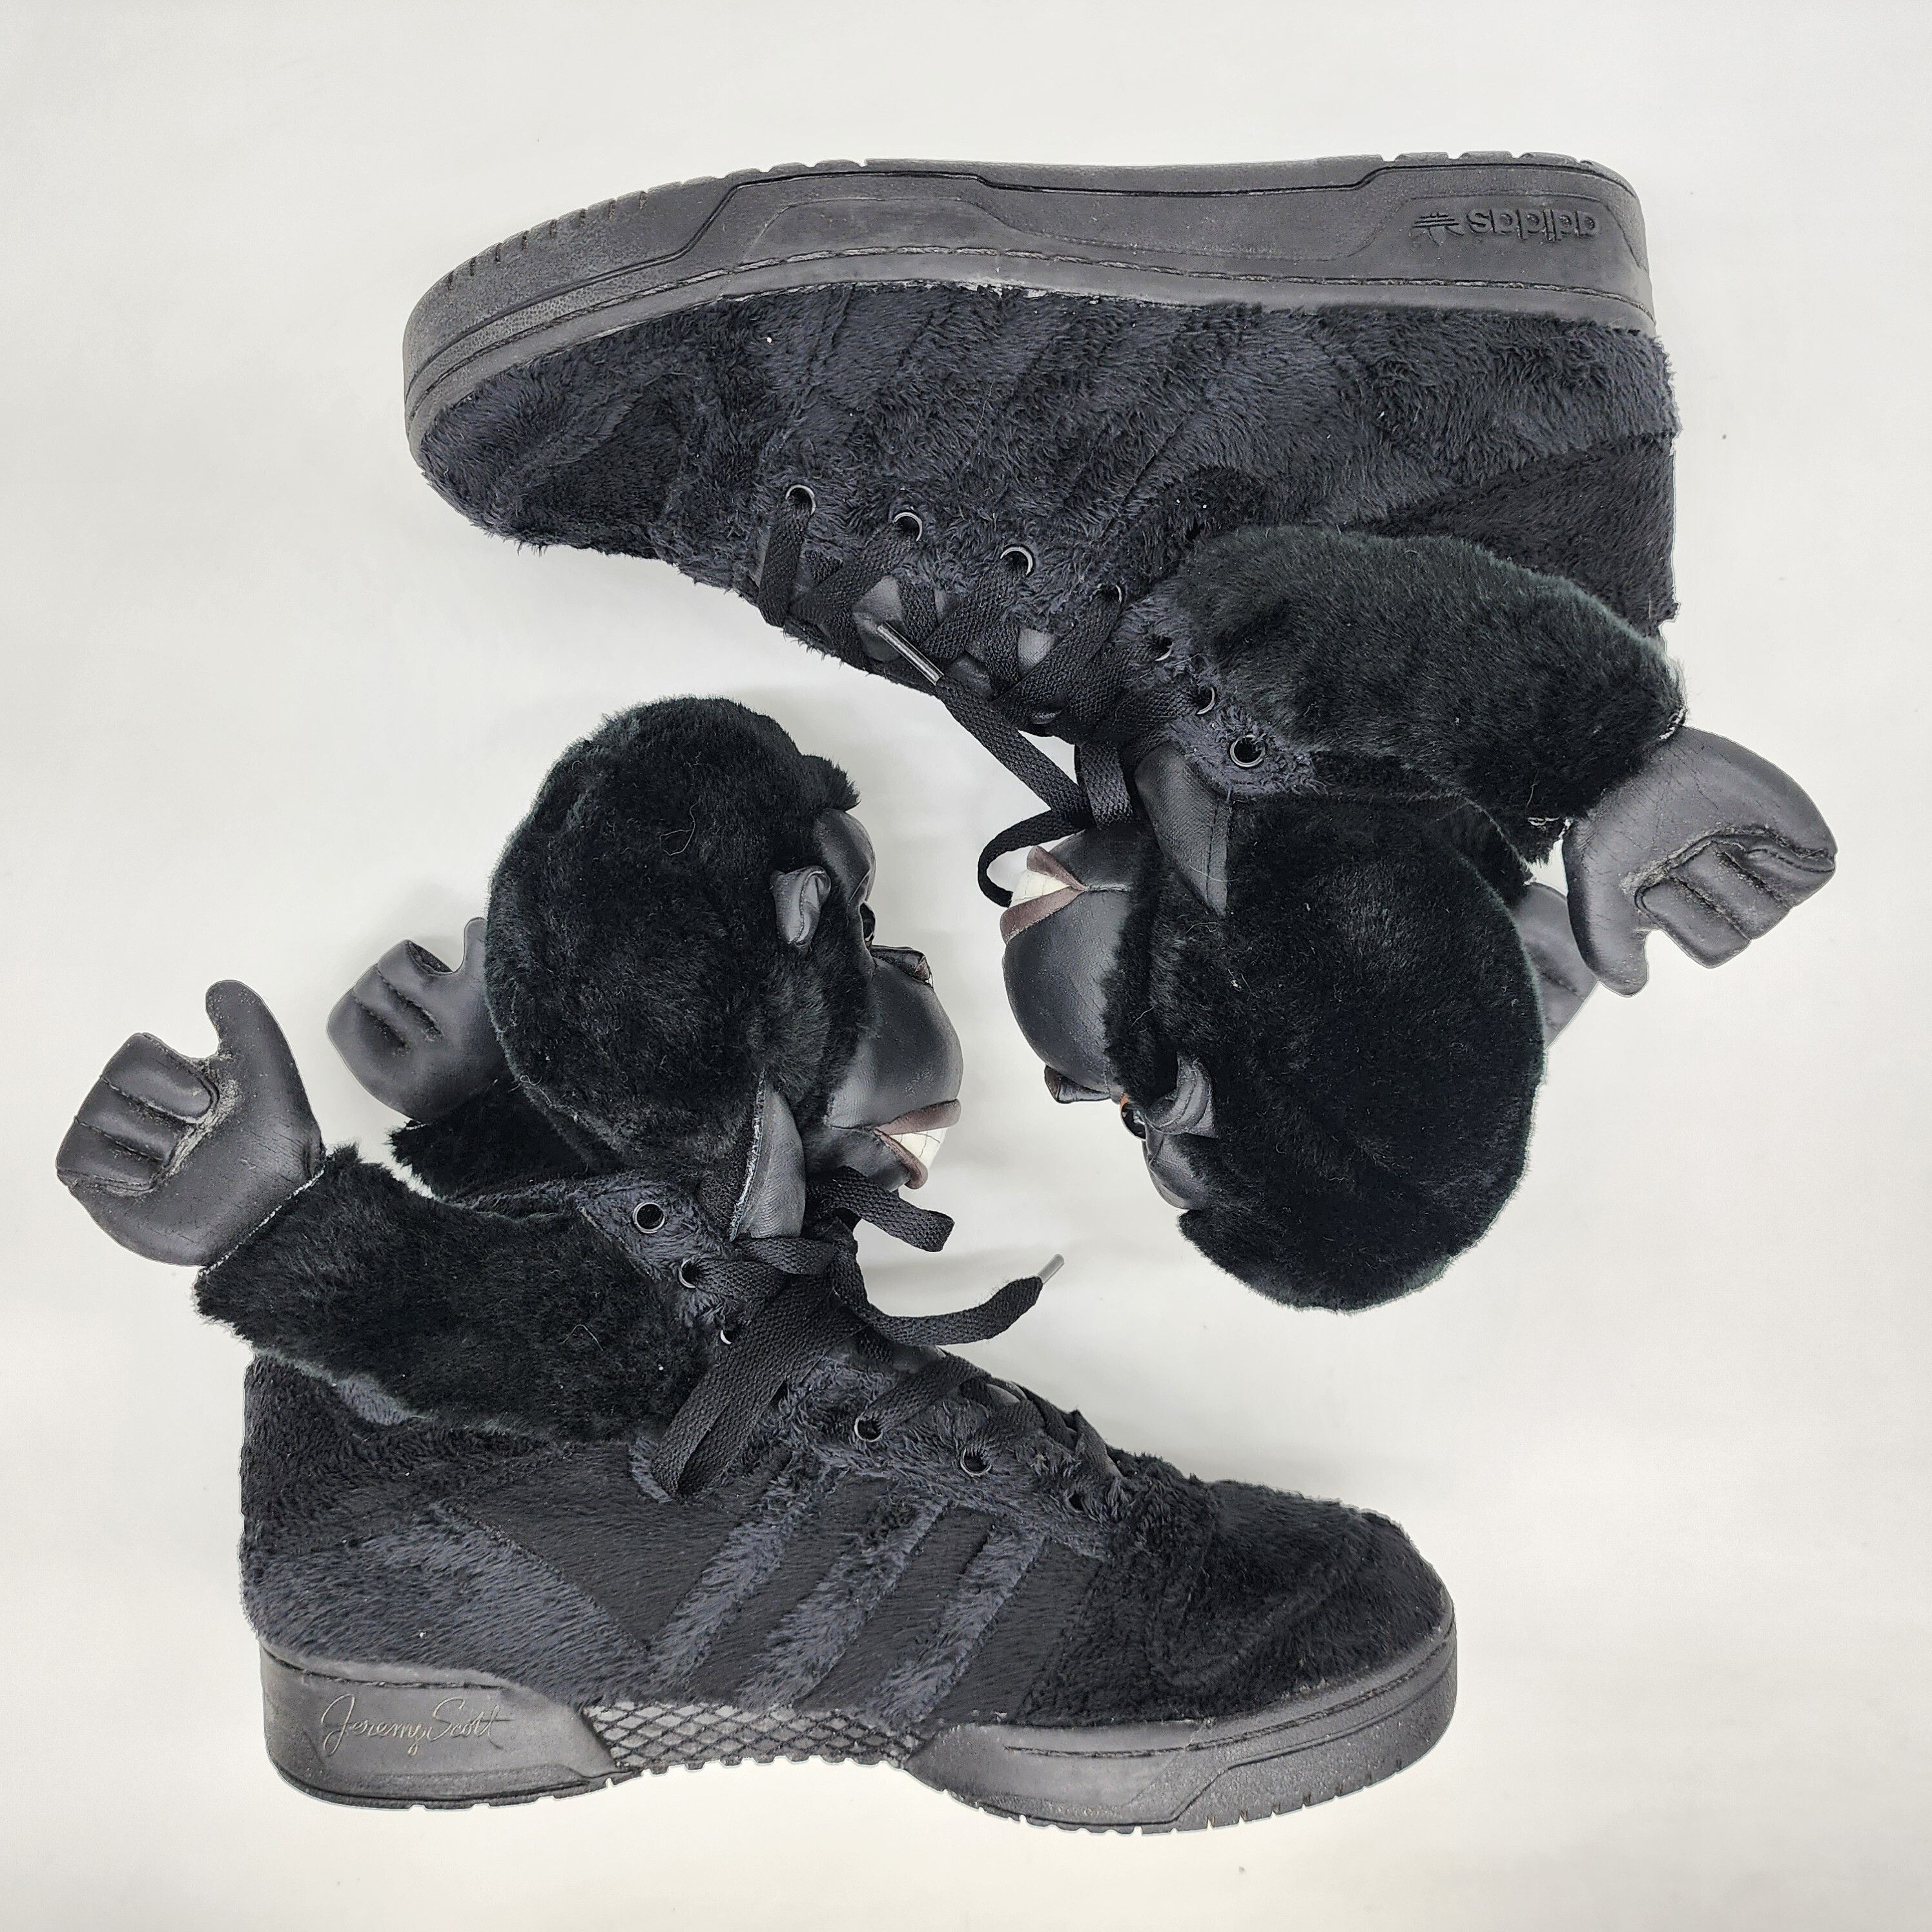 Adidas x Jeremy Scott - Gorilla Sneakers "2 Chainz" - 7